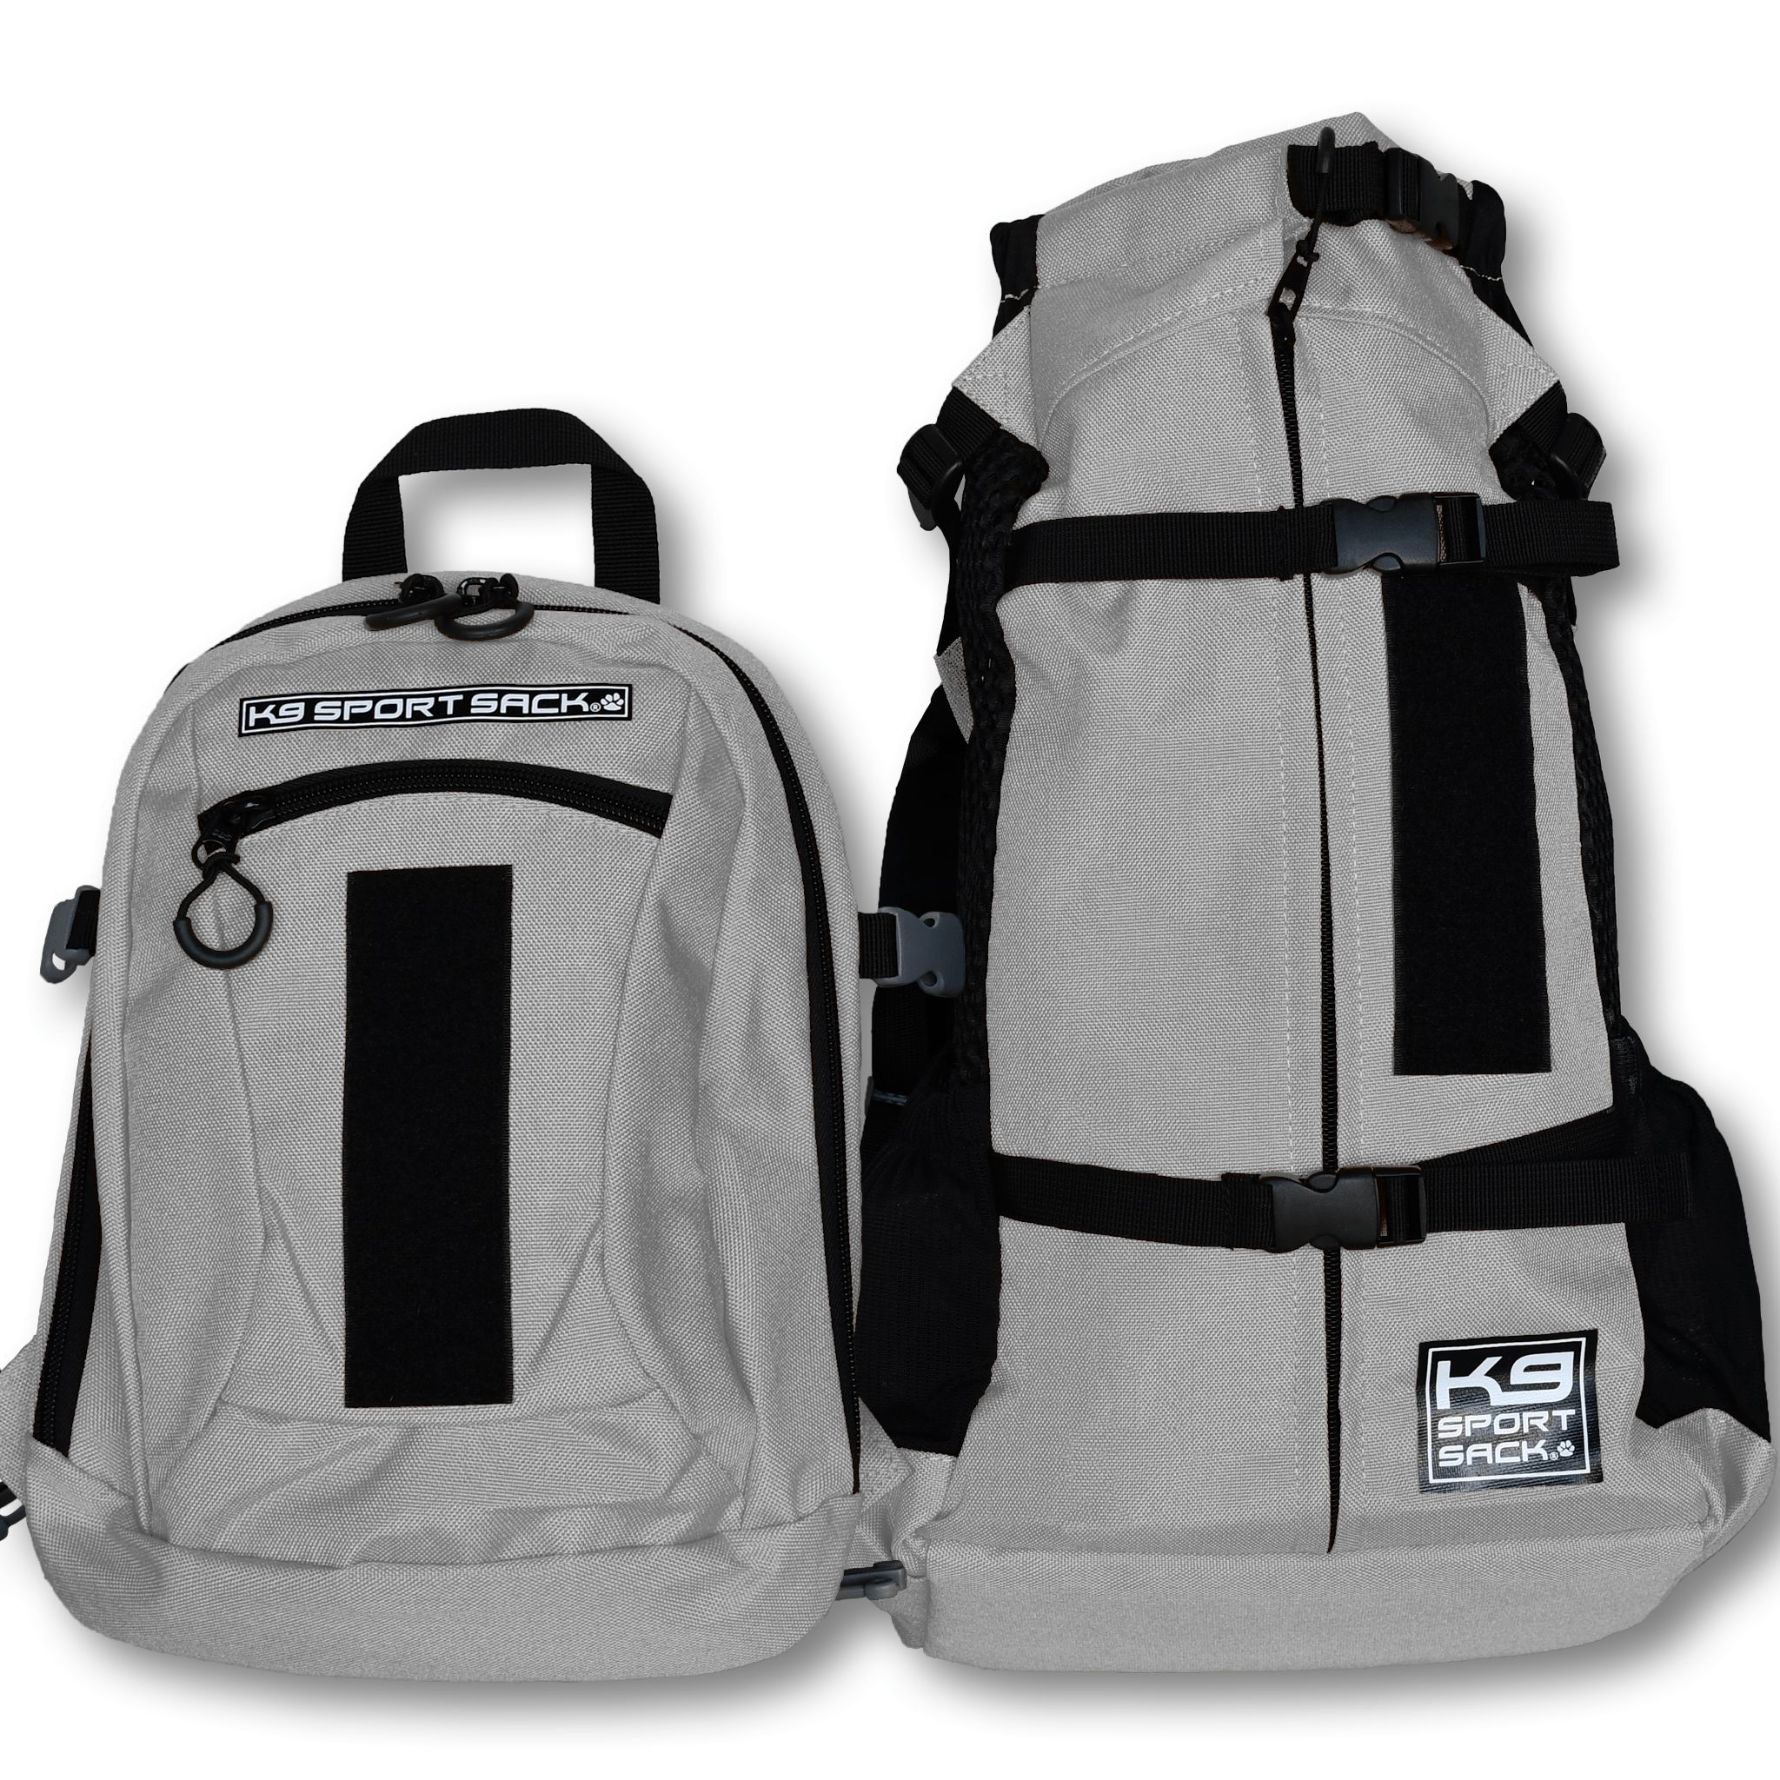 K9 Sport Sack Knavigate Backpack Pet Carrier, Large Grey